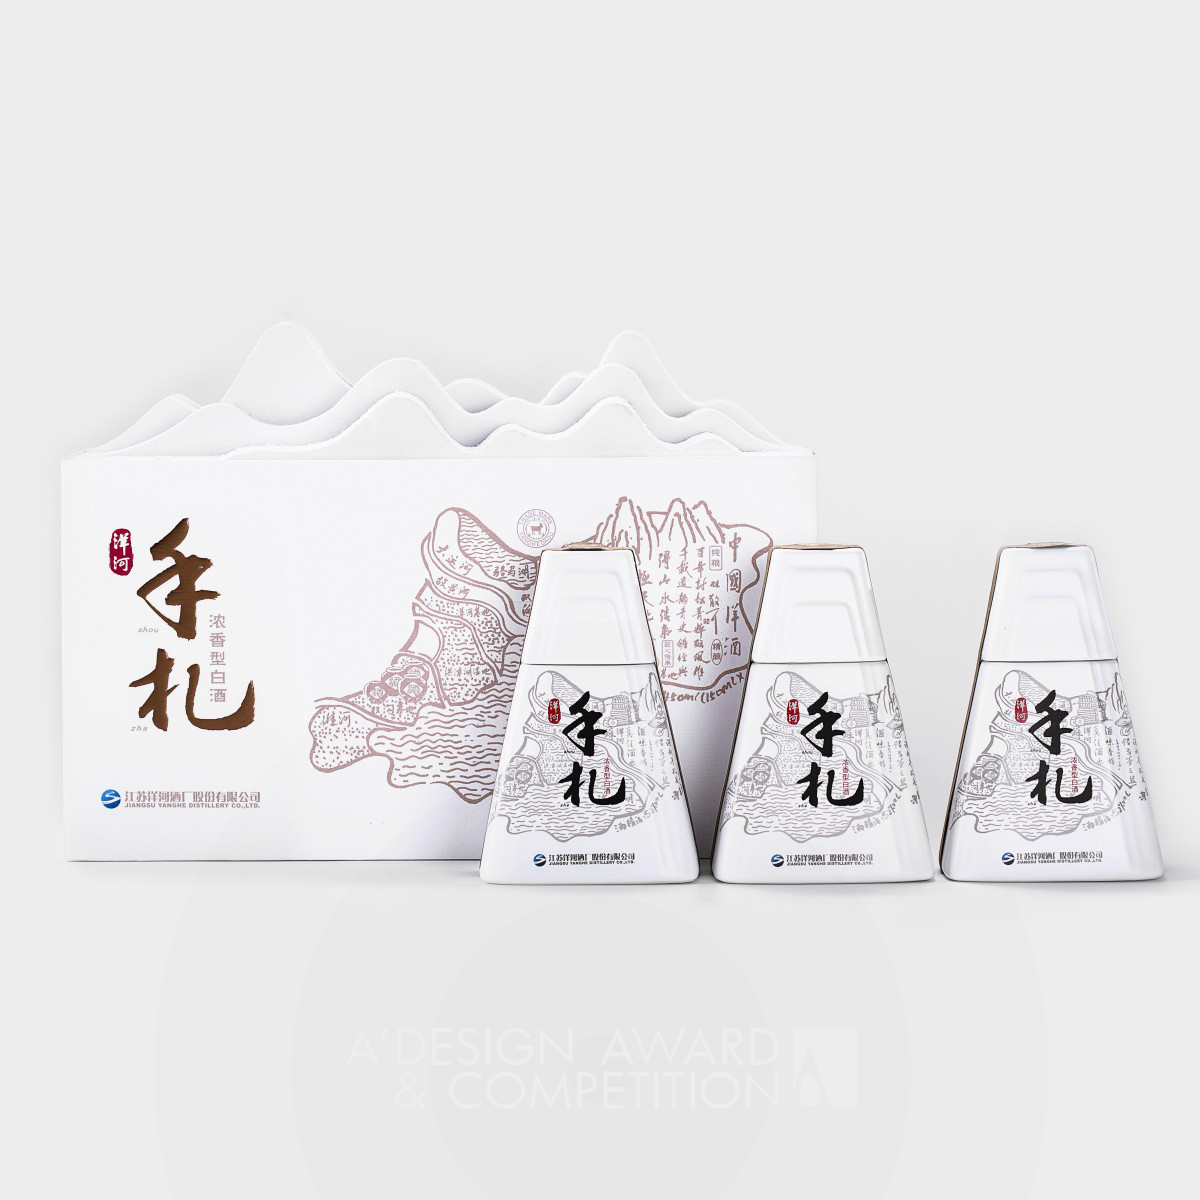 Yanghe Personal Letters Baijiu Packaging by Zhaoxin Zhu and Dongyan Ruan Bronze Packaging Design Award Winner 2021 